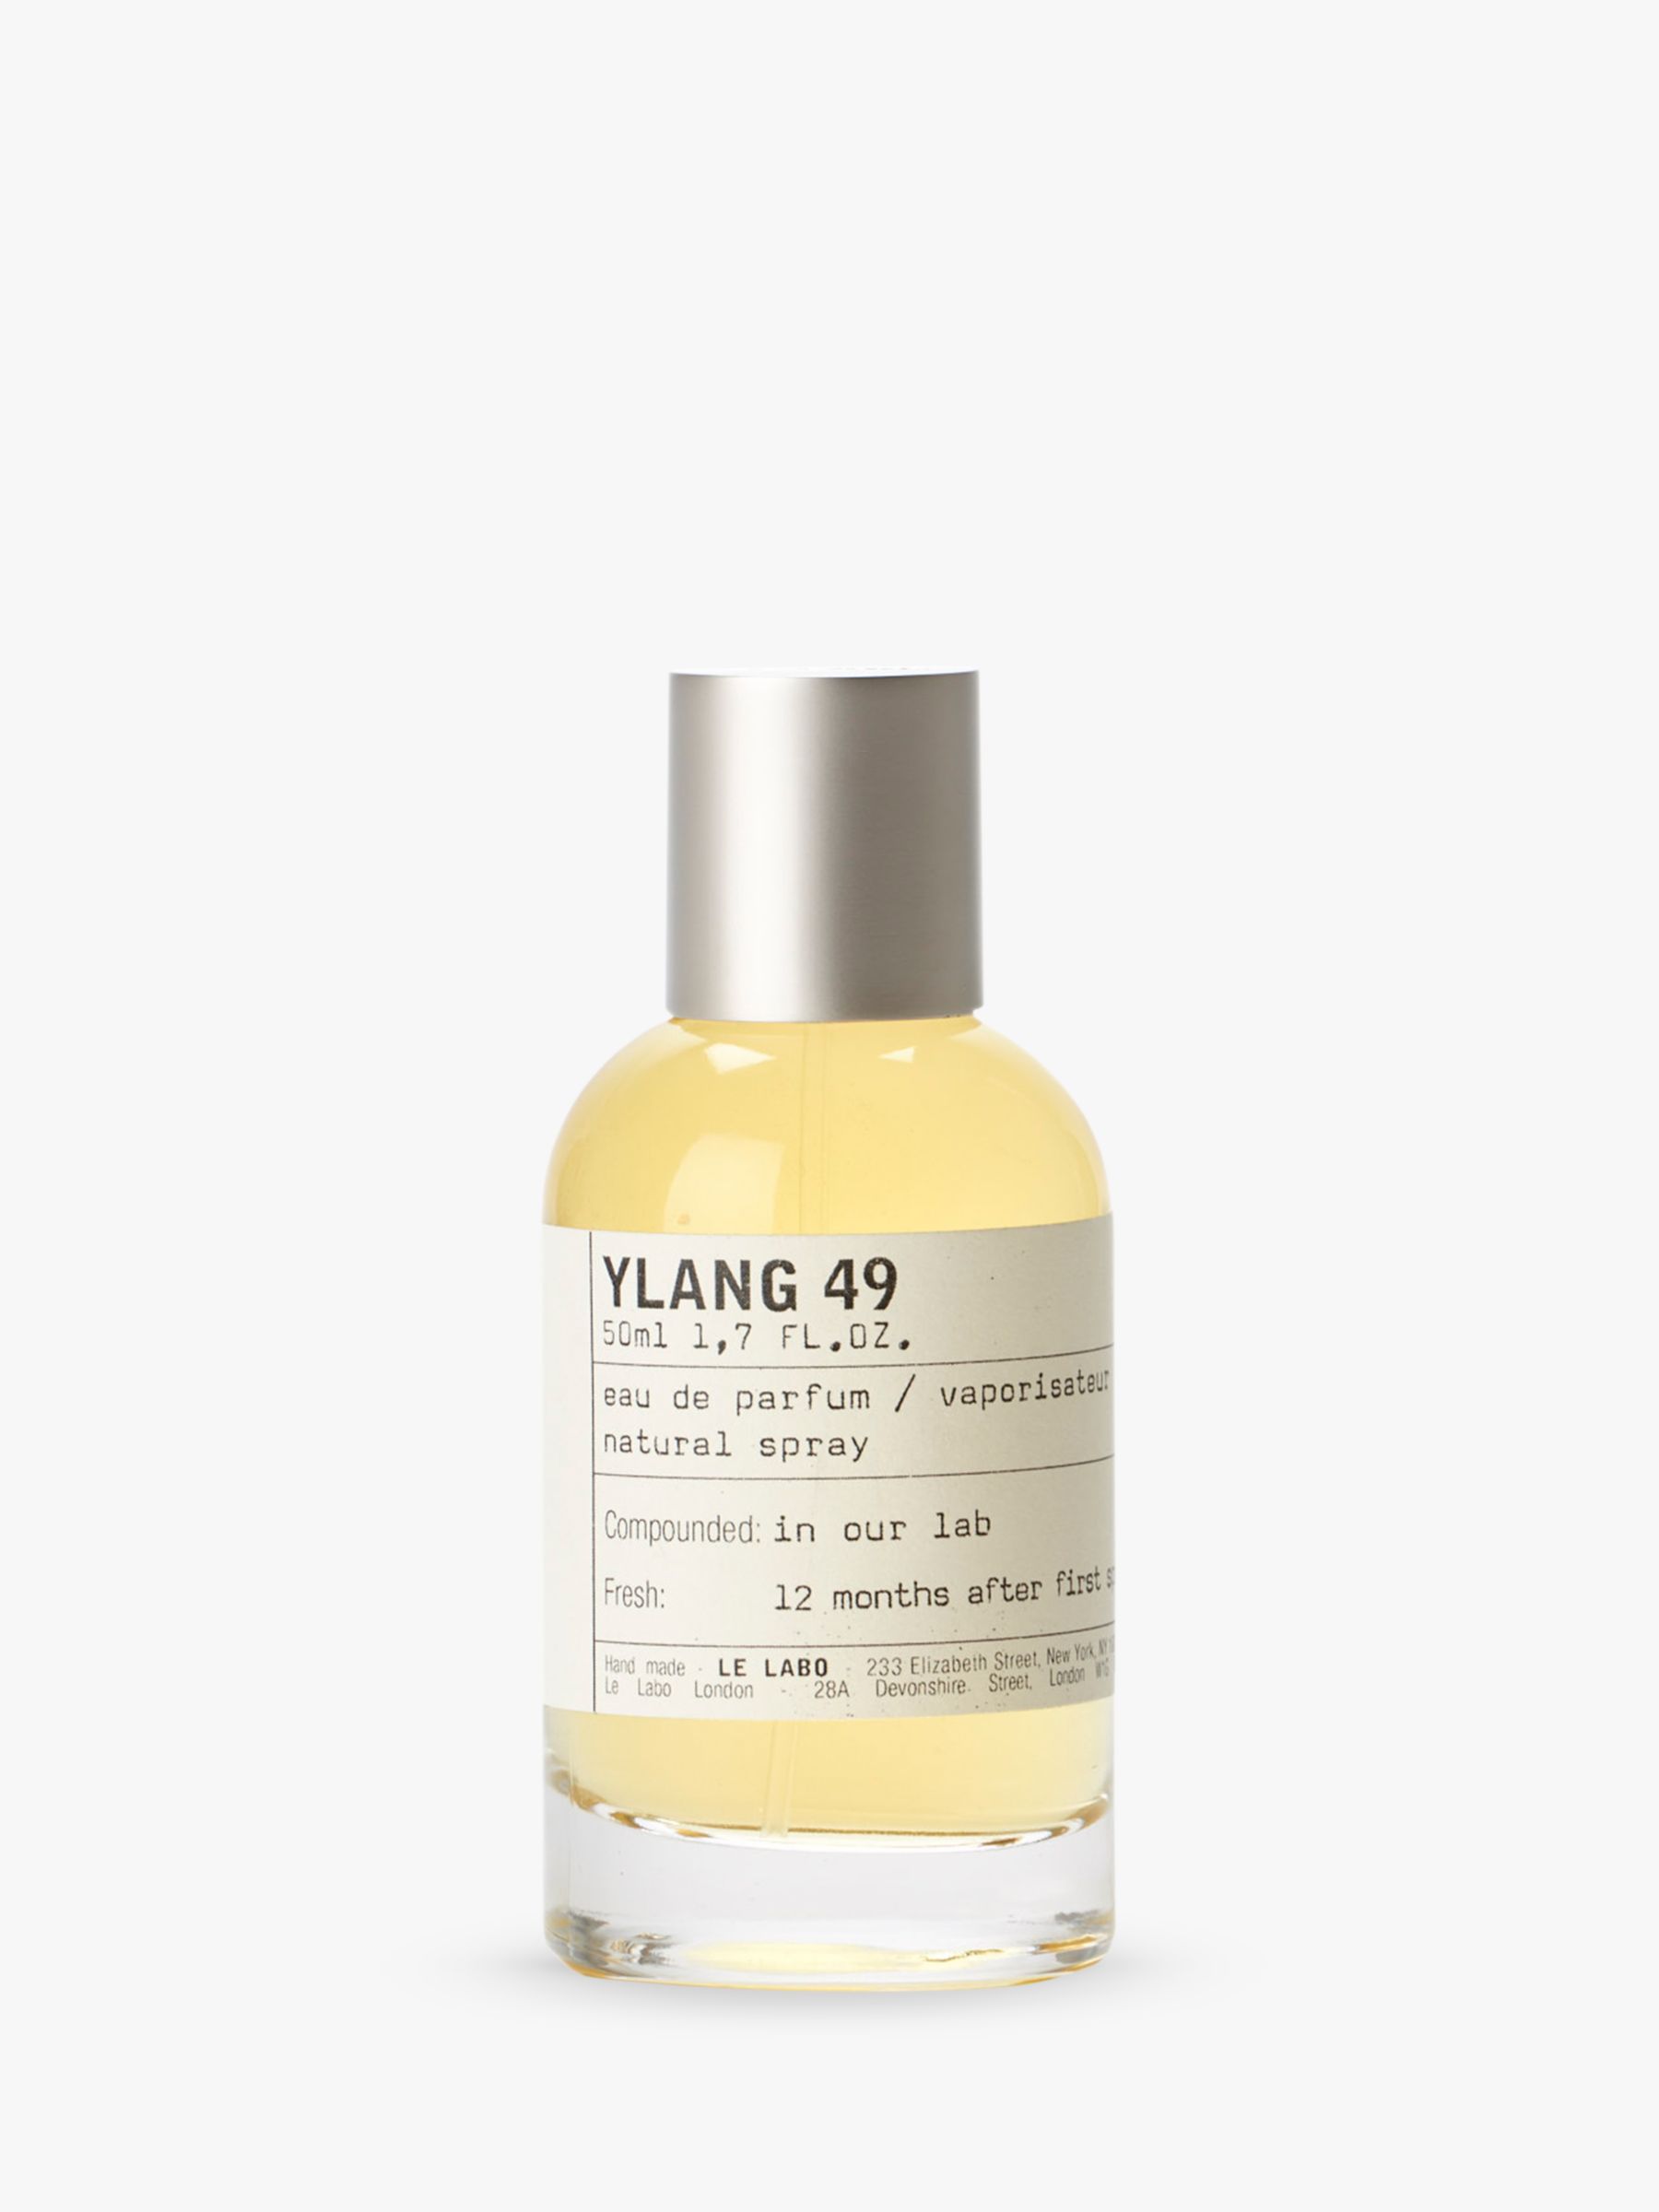 Le Labo Ylang 49 Eau de Parfum, 50ml at John Lewis & Partners